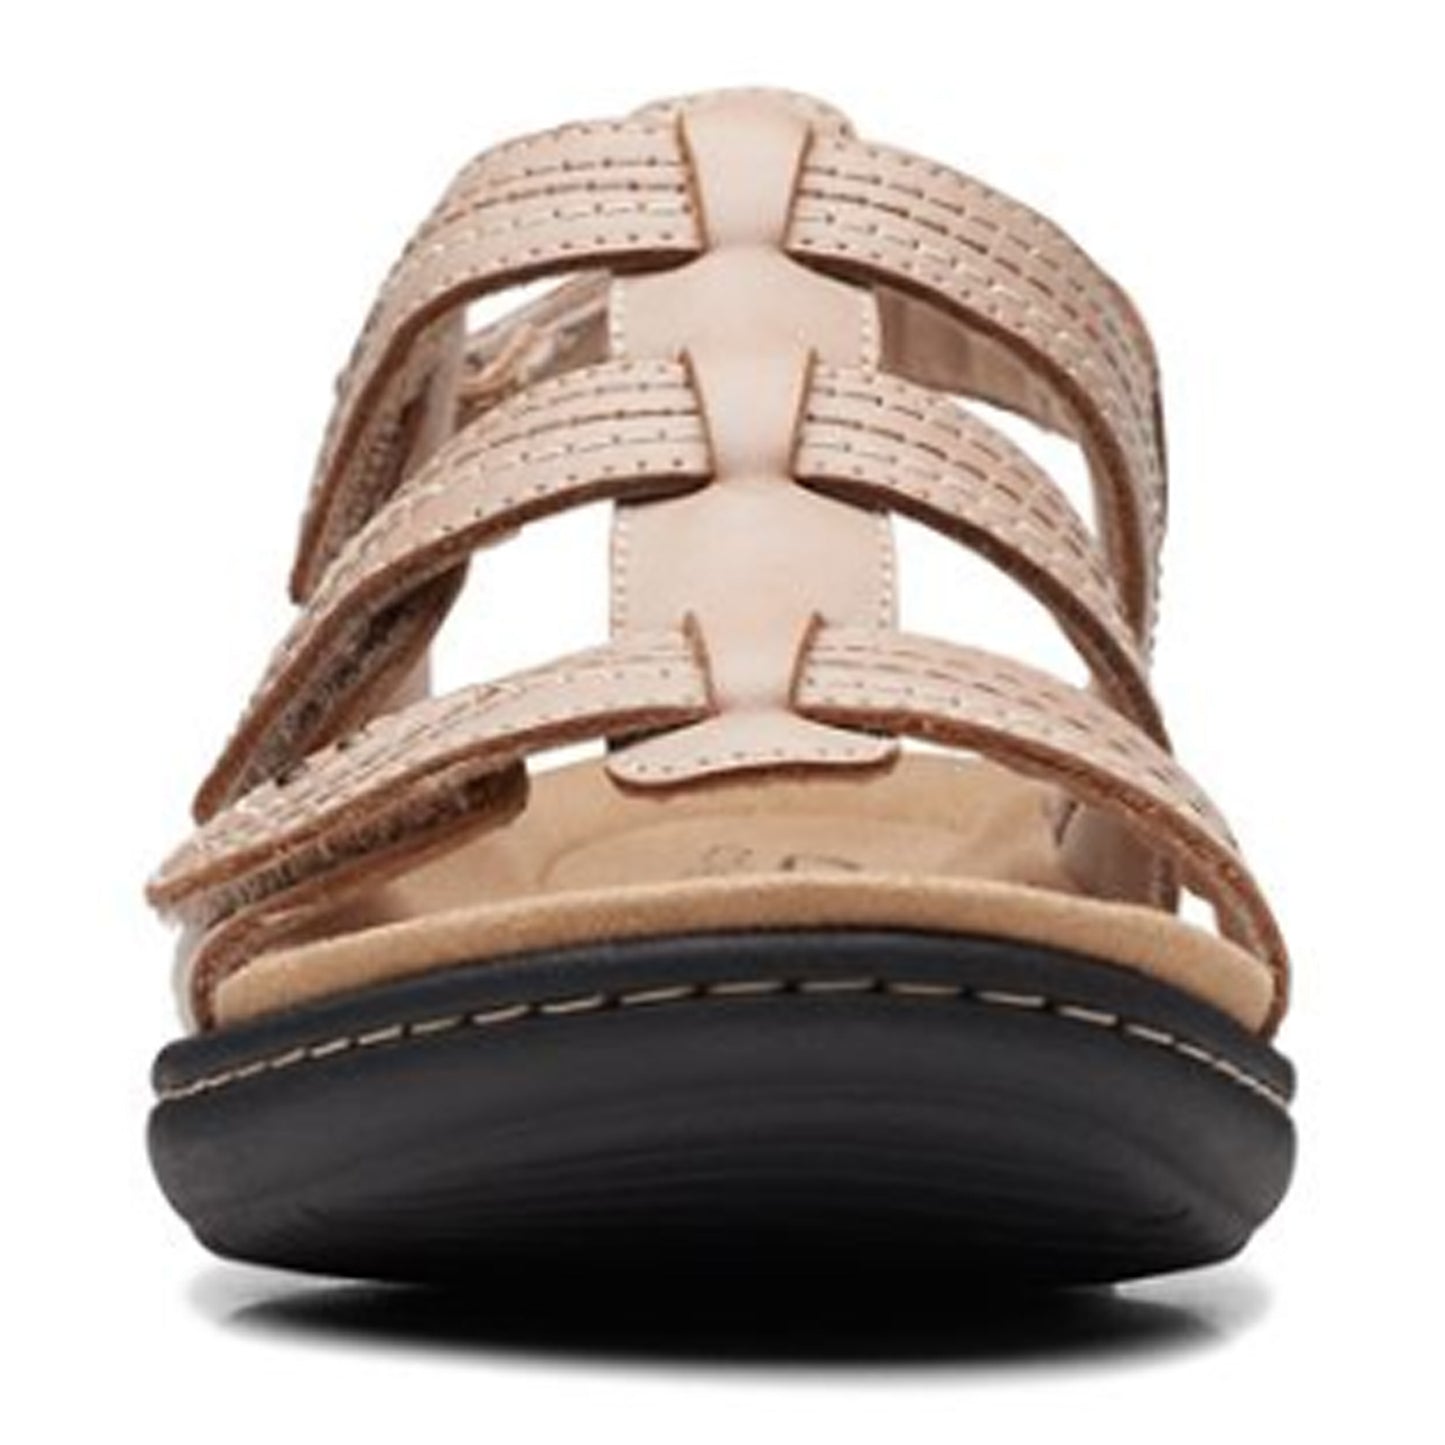 Peltz Shoes  Women's Clarks Laurieann Vine Sandal SAND 26171269